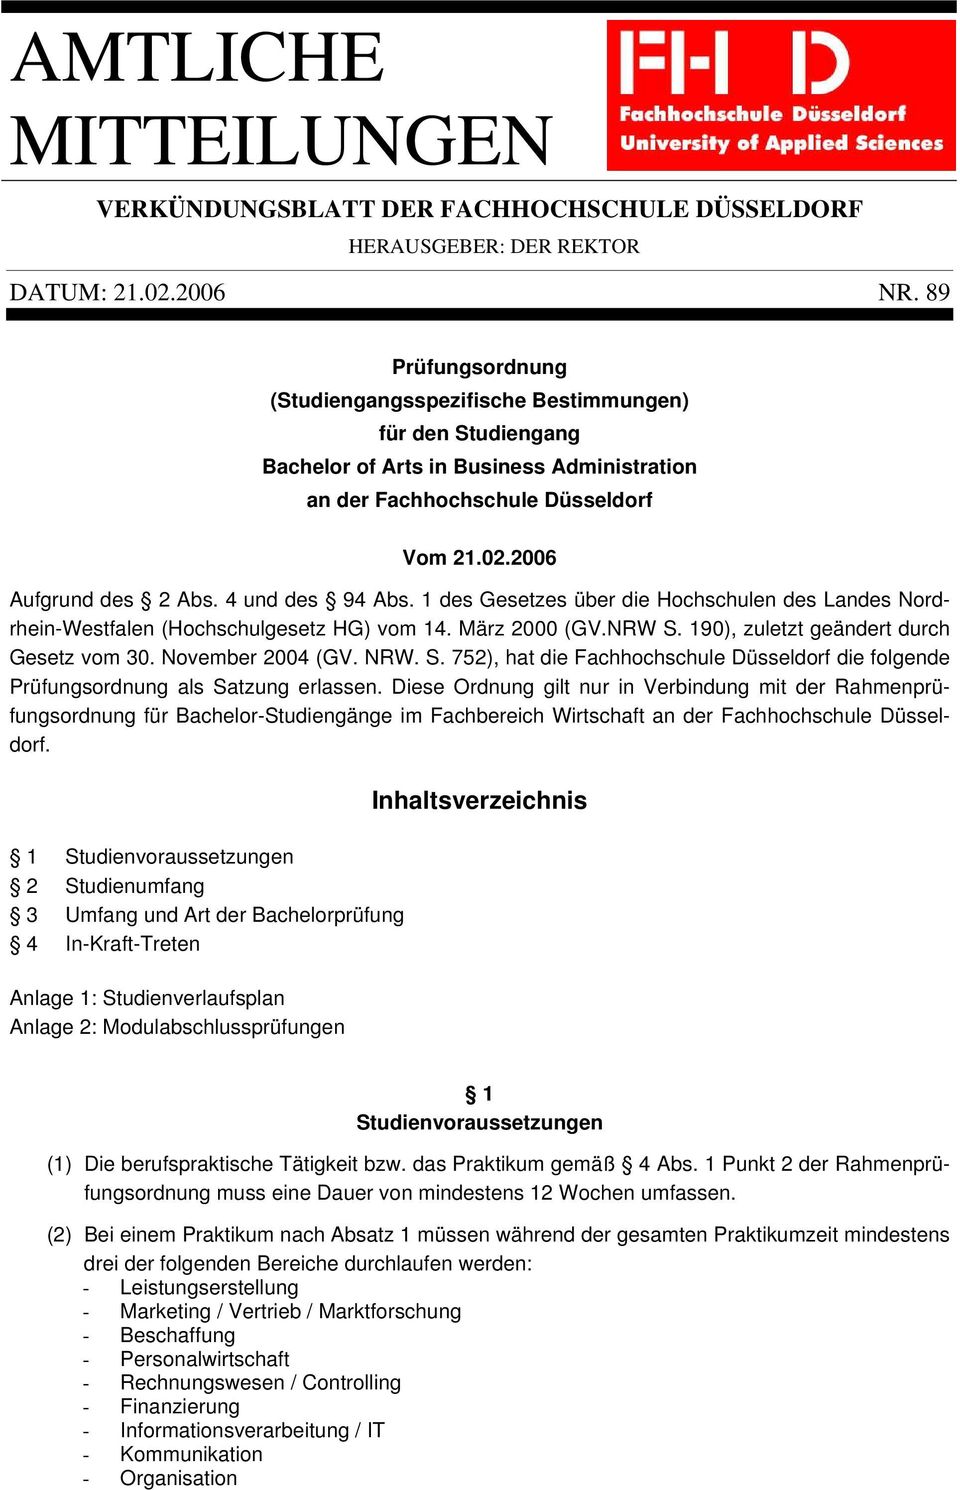 4 und des 94 Abs. 1 des Gesetzes über die Hochschulen des Landes Nordrhein-Westfalen (Hochschulgesetz HG) vom 14. März 2000 (GV.NRW S. 190), zuletzt geändert durch Gesetz vom 30. November 2004 (GV.